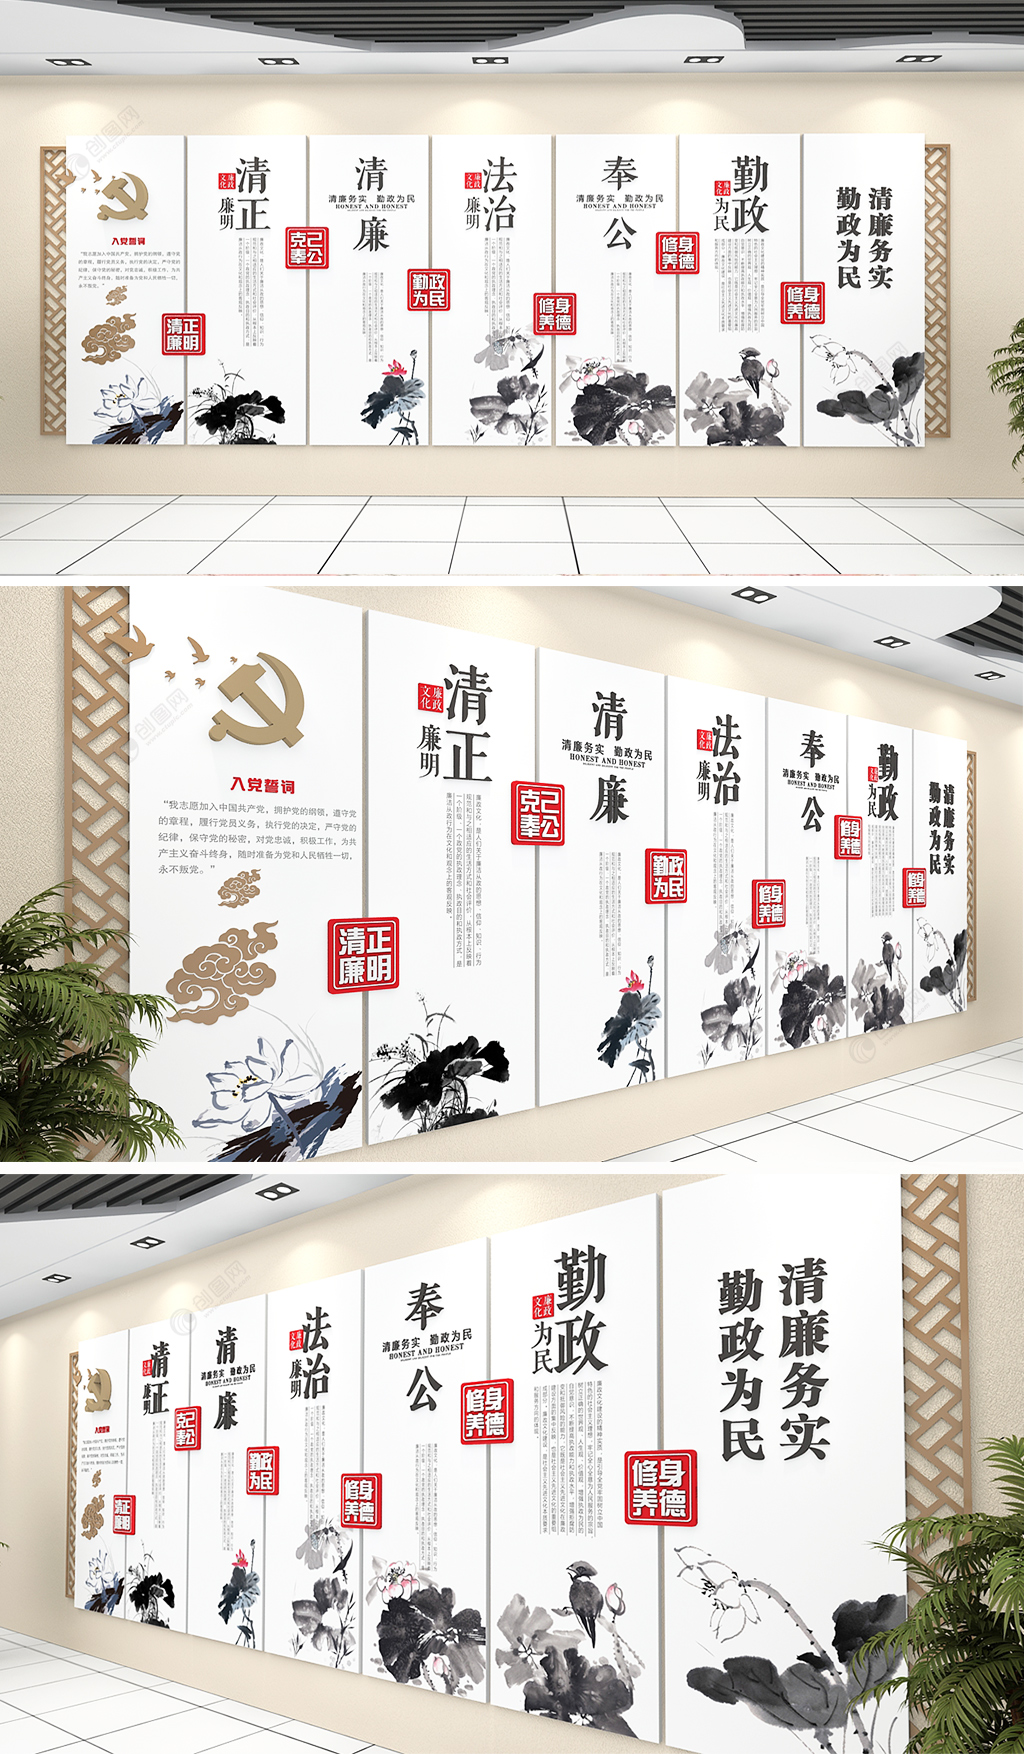 中国风廉政廉洁文化墙设计效果图